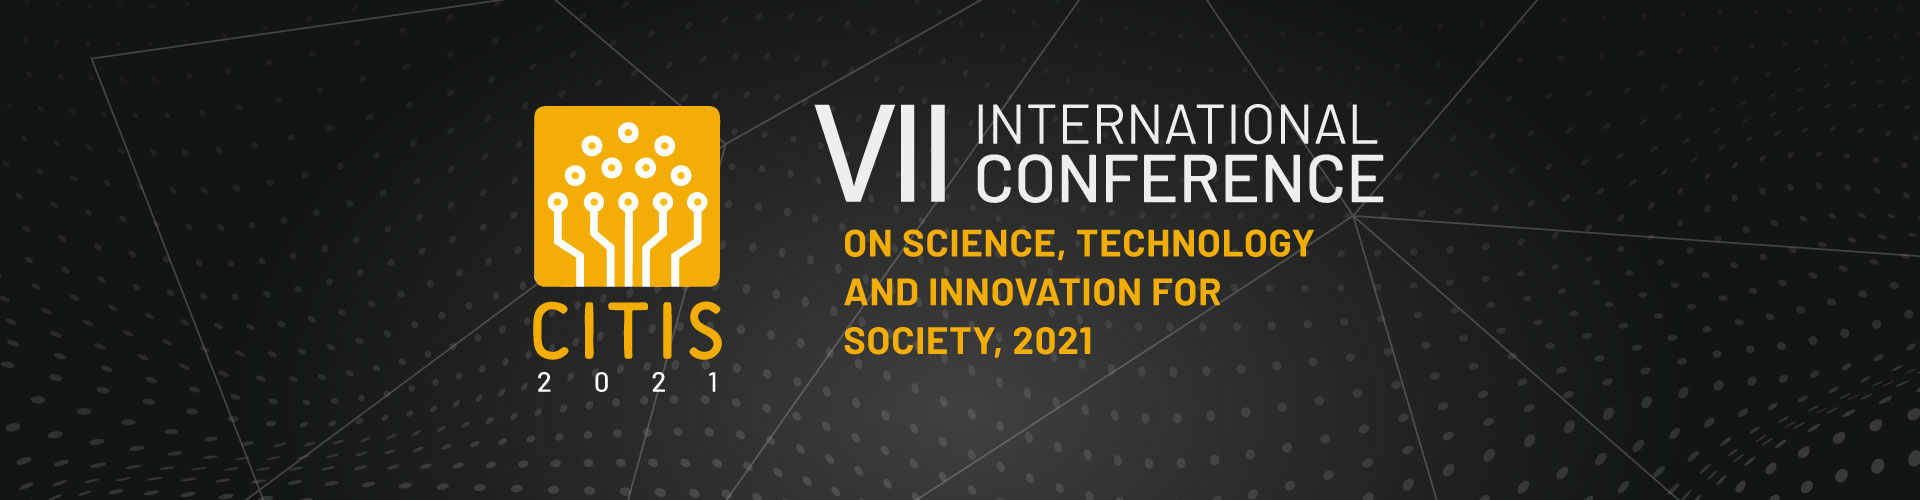 Portada congreso internacional de ciencia, tecnología e innovación para la sociedad